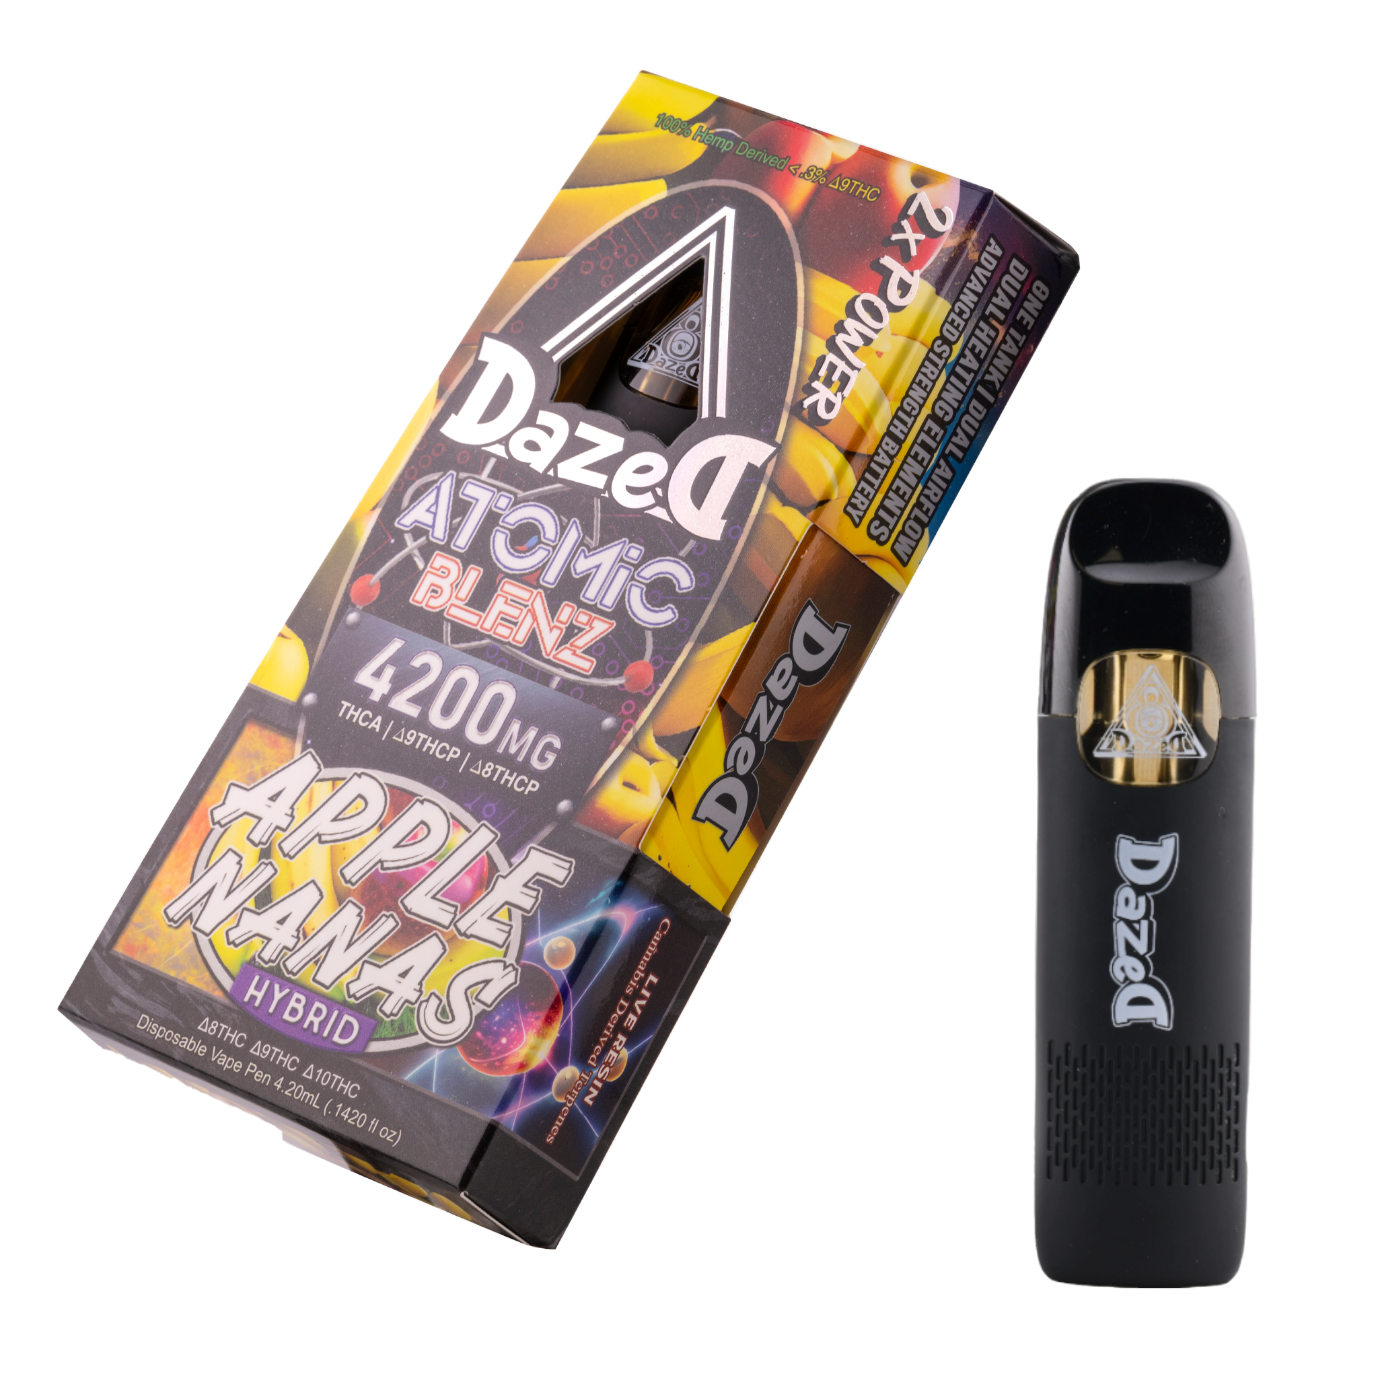 Dazed8 | Shop Delta 8 Online